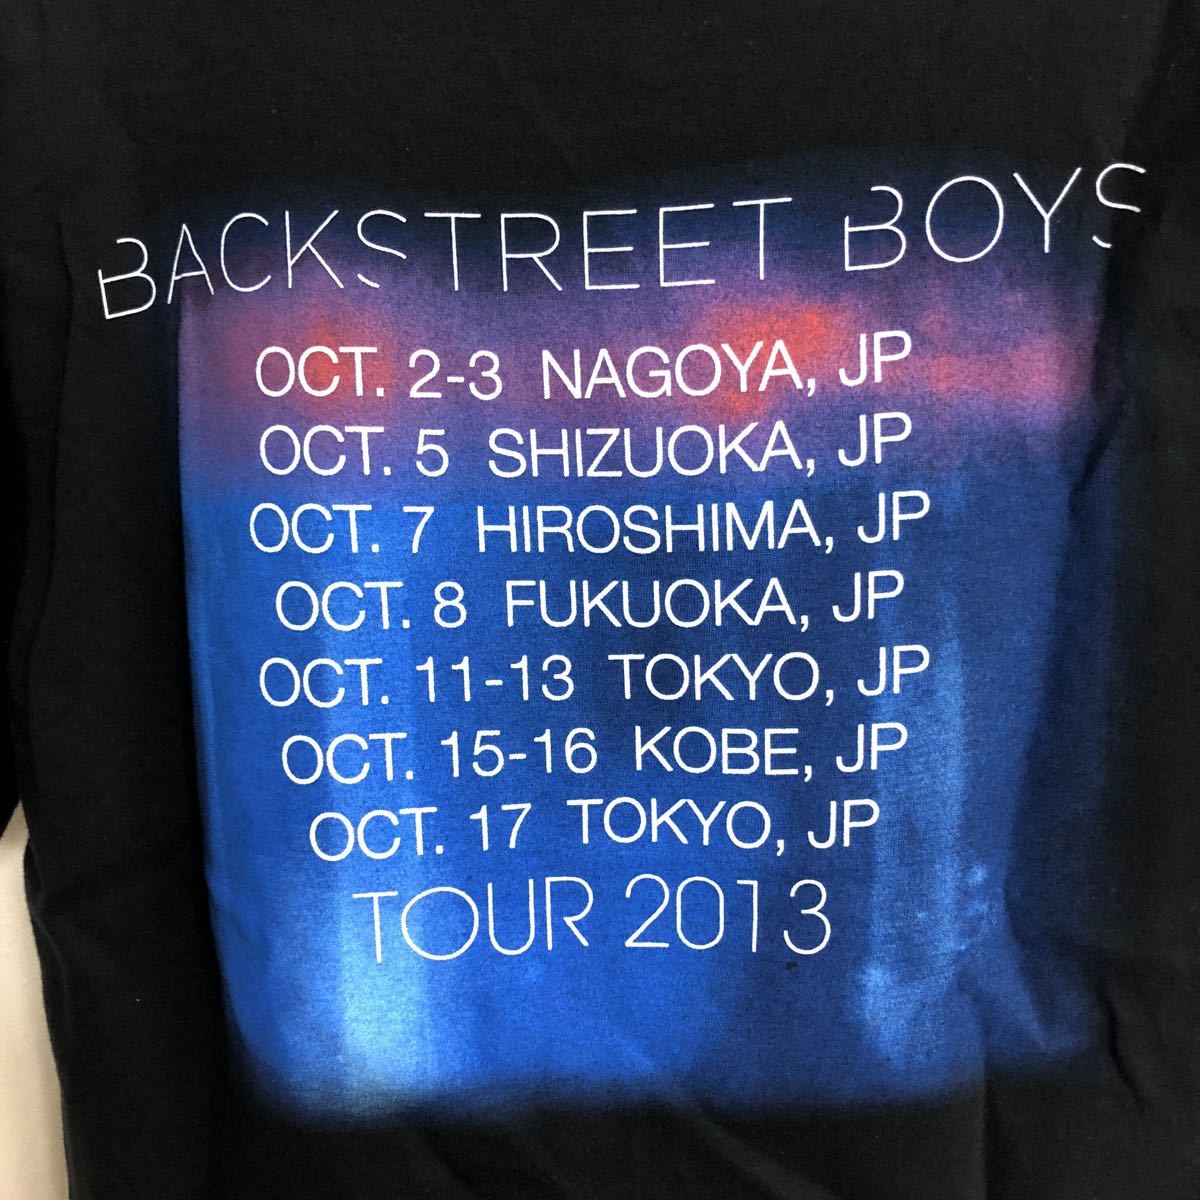  прекрасный товар BACKSTREET BOYS футболка XS GILDAN задний Street boys 